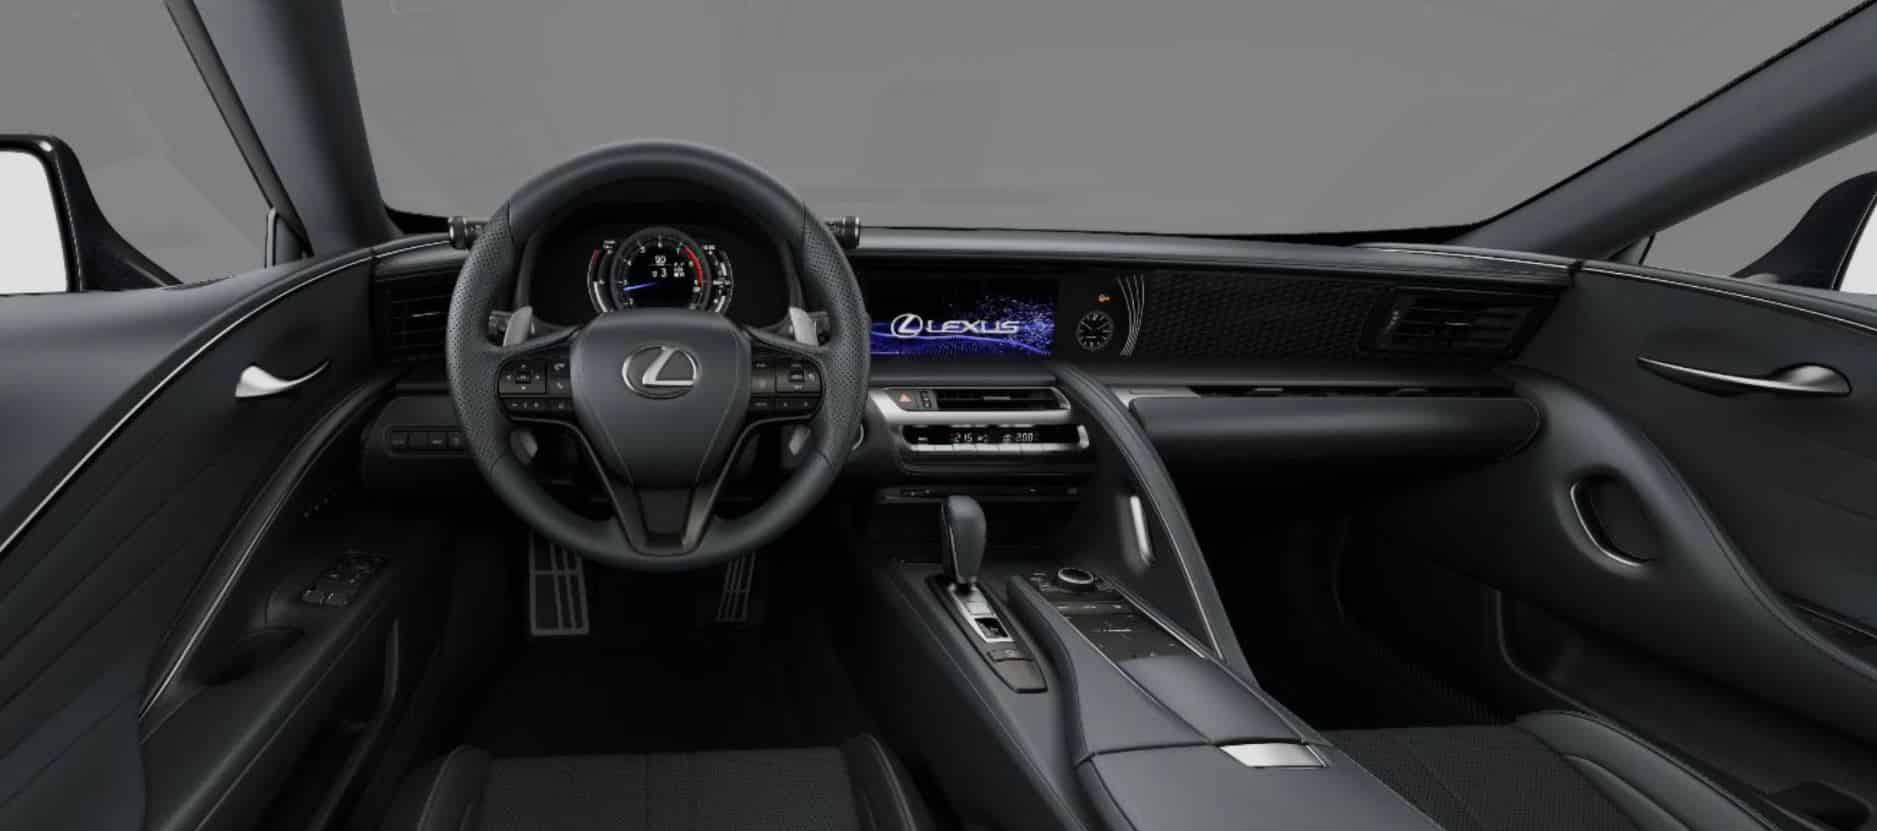 La única unidad del Lexus LC 500 Bespoke Carbon que llega a España cuesta 157.500 euros